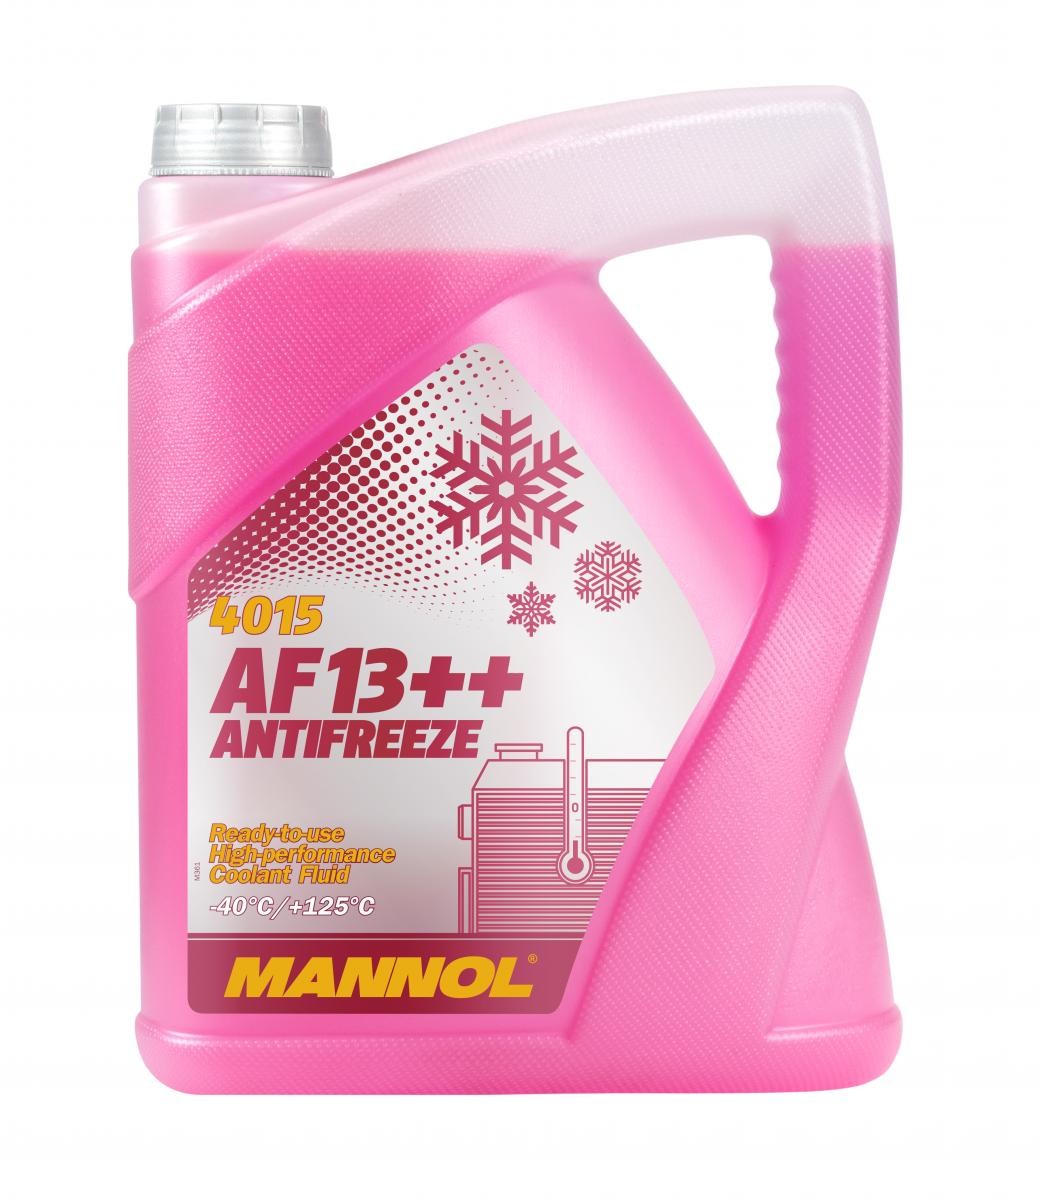 Kupite MANNOL Sredstvo proti zmrzovanju hladilne vode (antifriz) MN4015-5 za ERF po zmerni ceni